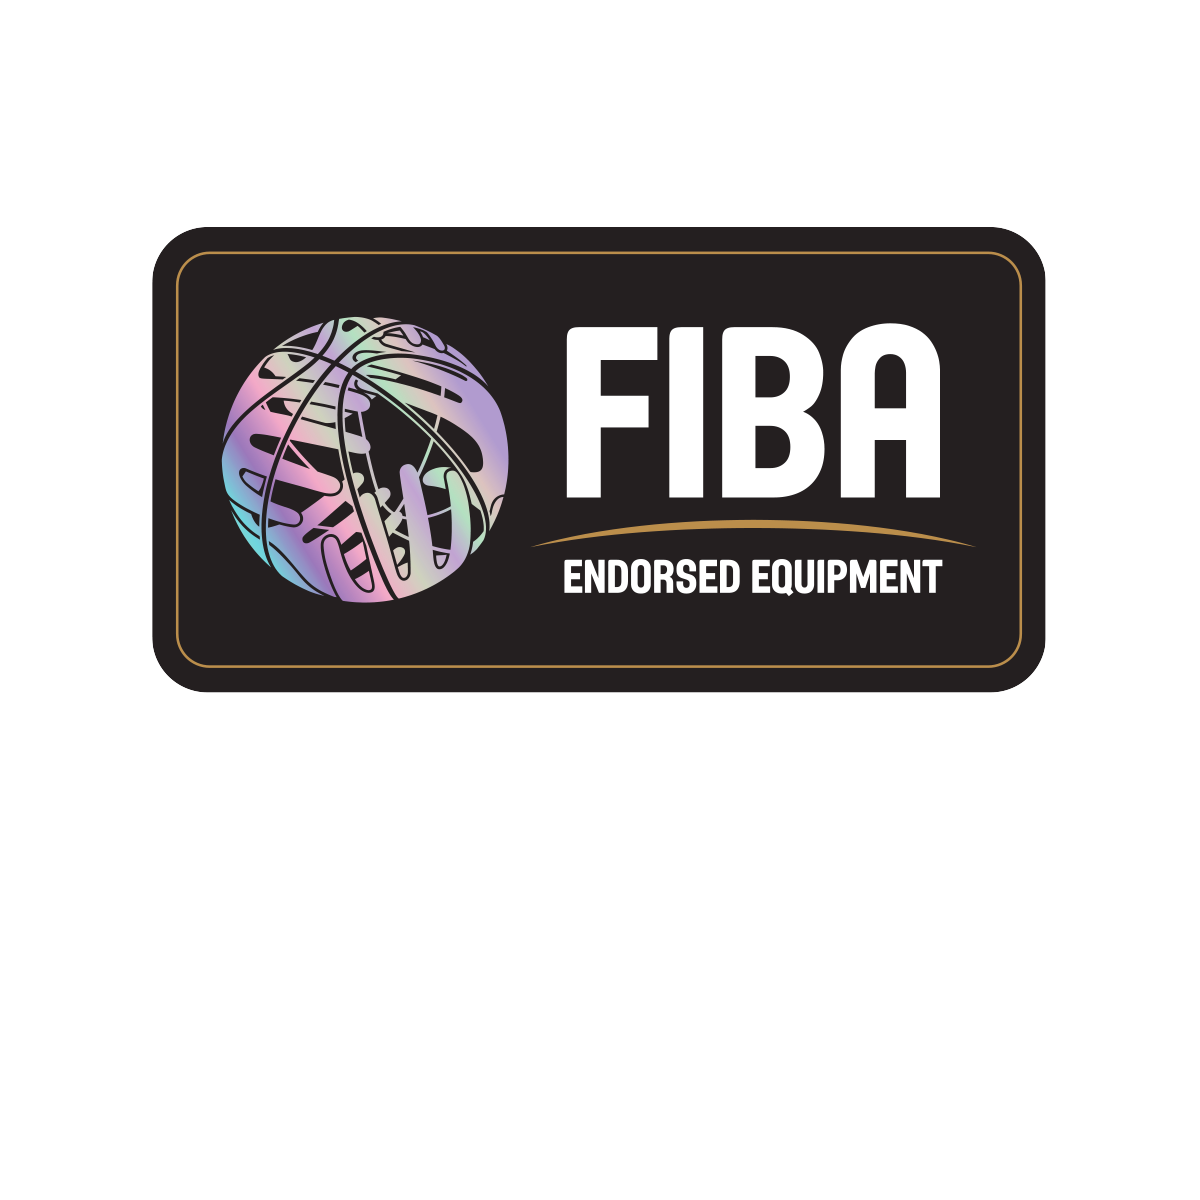 FIBAxDrDish